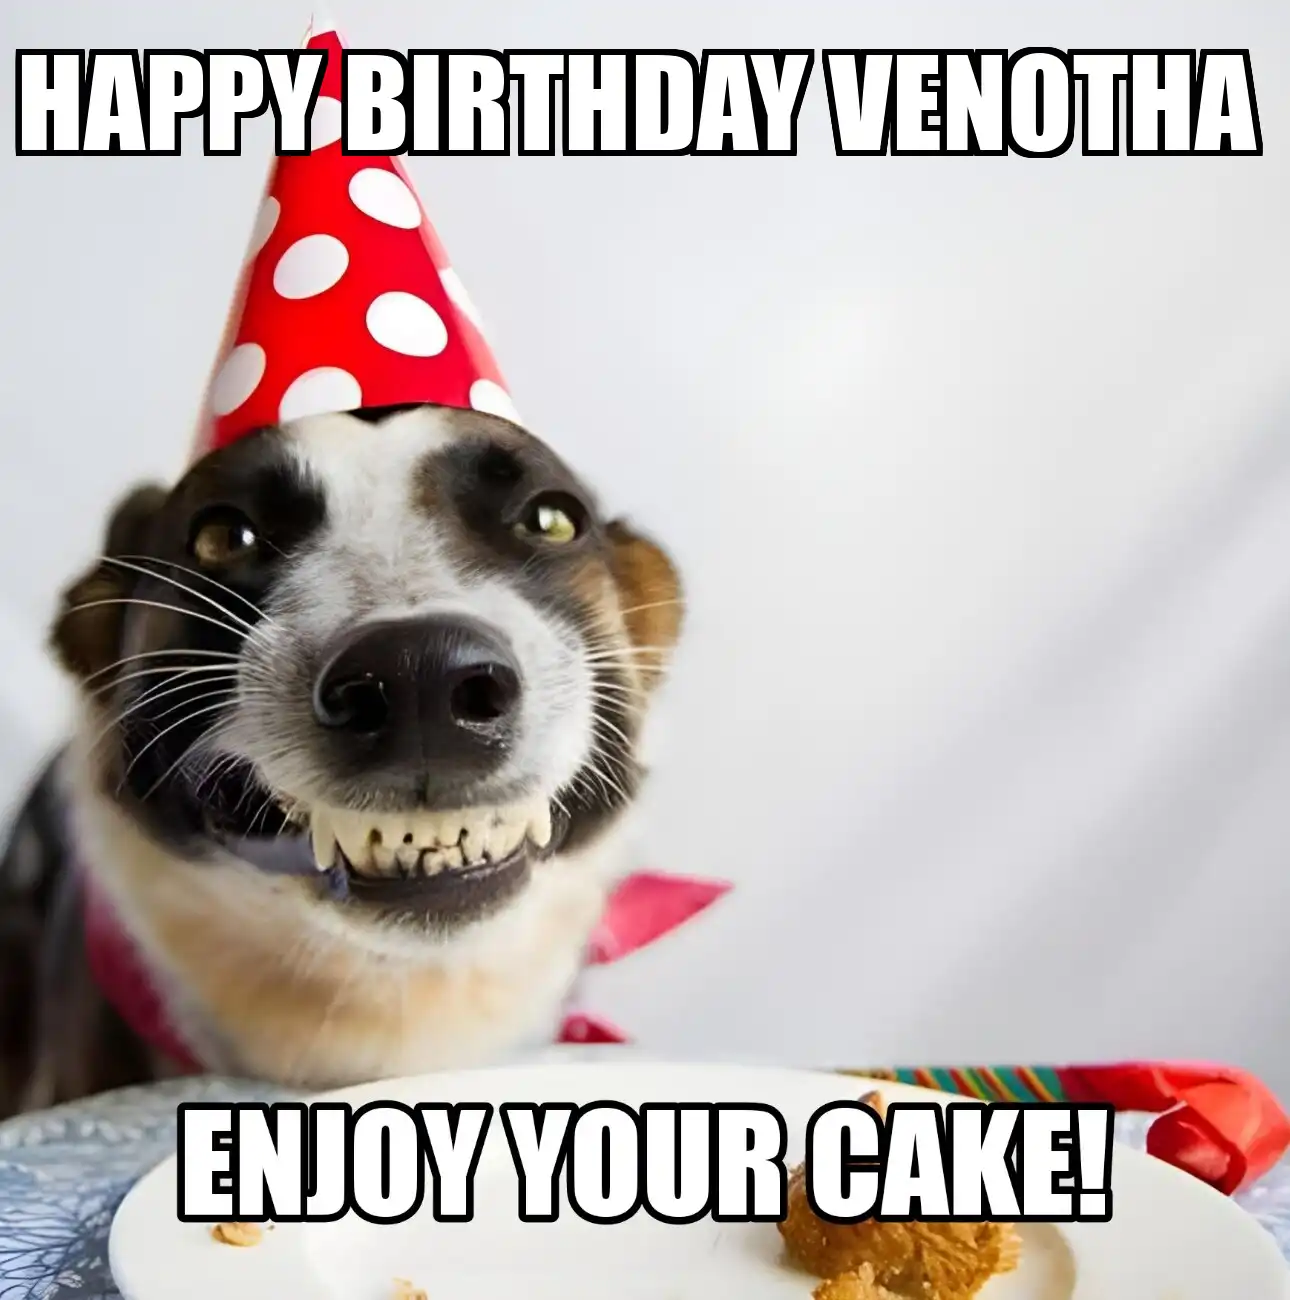 Happy Birthday Venotha Enjoy Your Cake Dog Meme